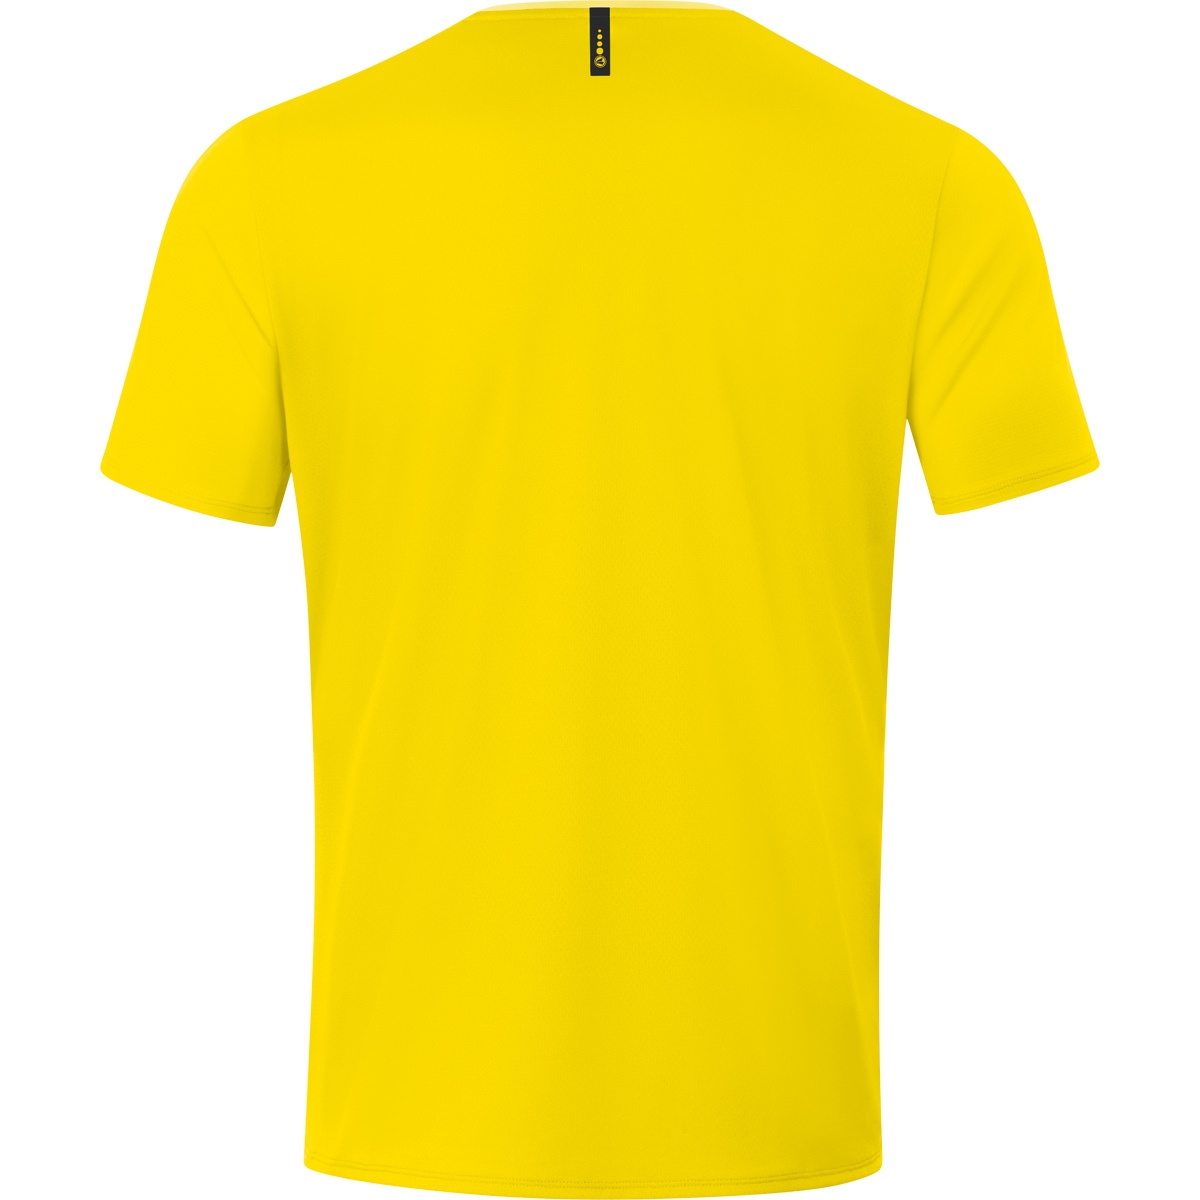 JAKO T-Shirt Champ 2.0 S, 6120 Gr. light, Herren, citro/citro